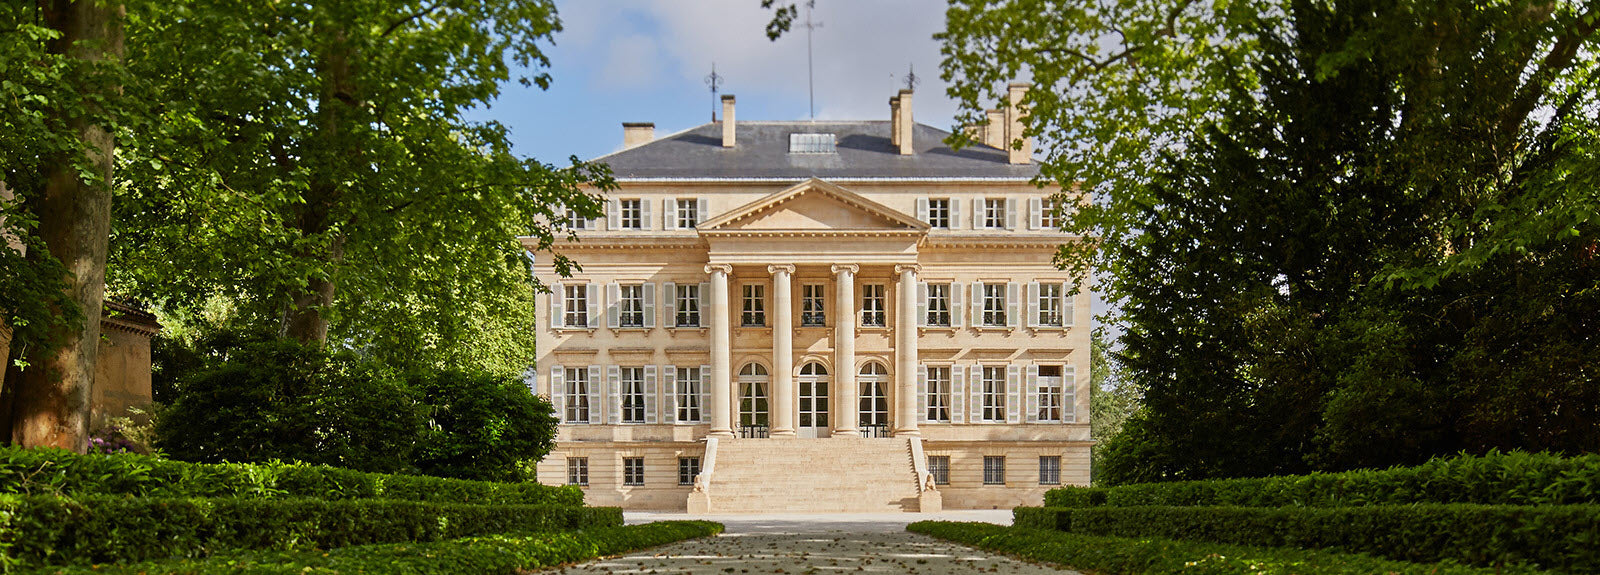 Château Bournac - 2018 - Médoc Cru Bourgeois 